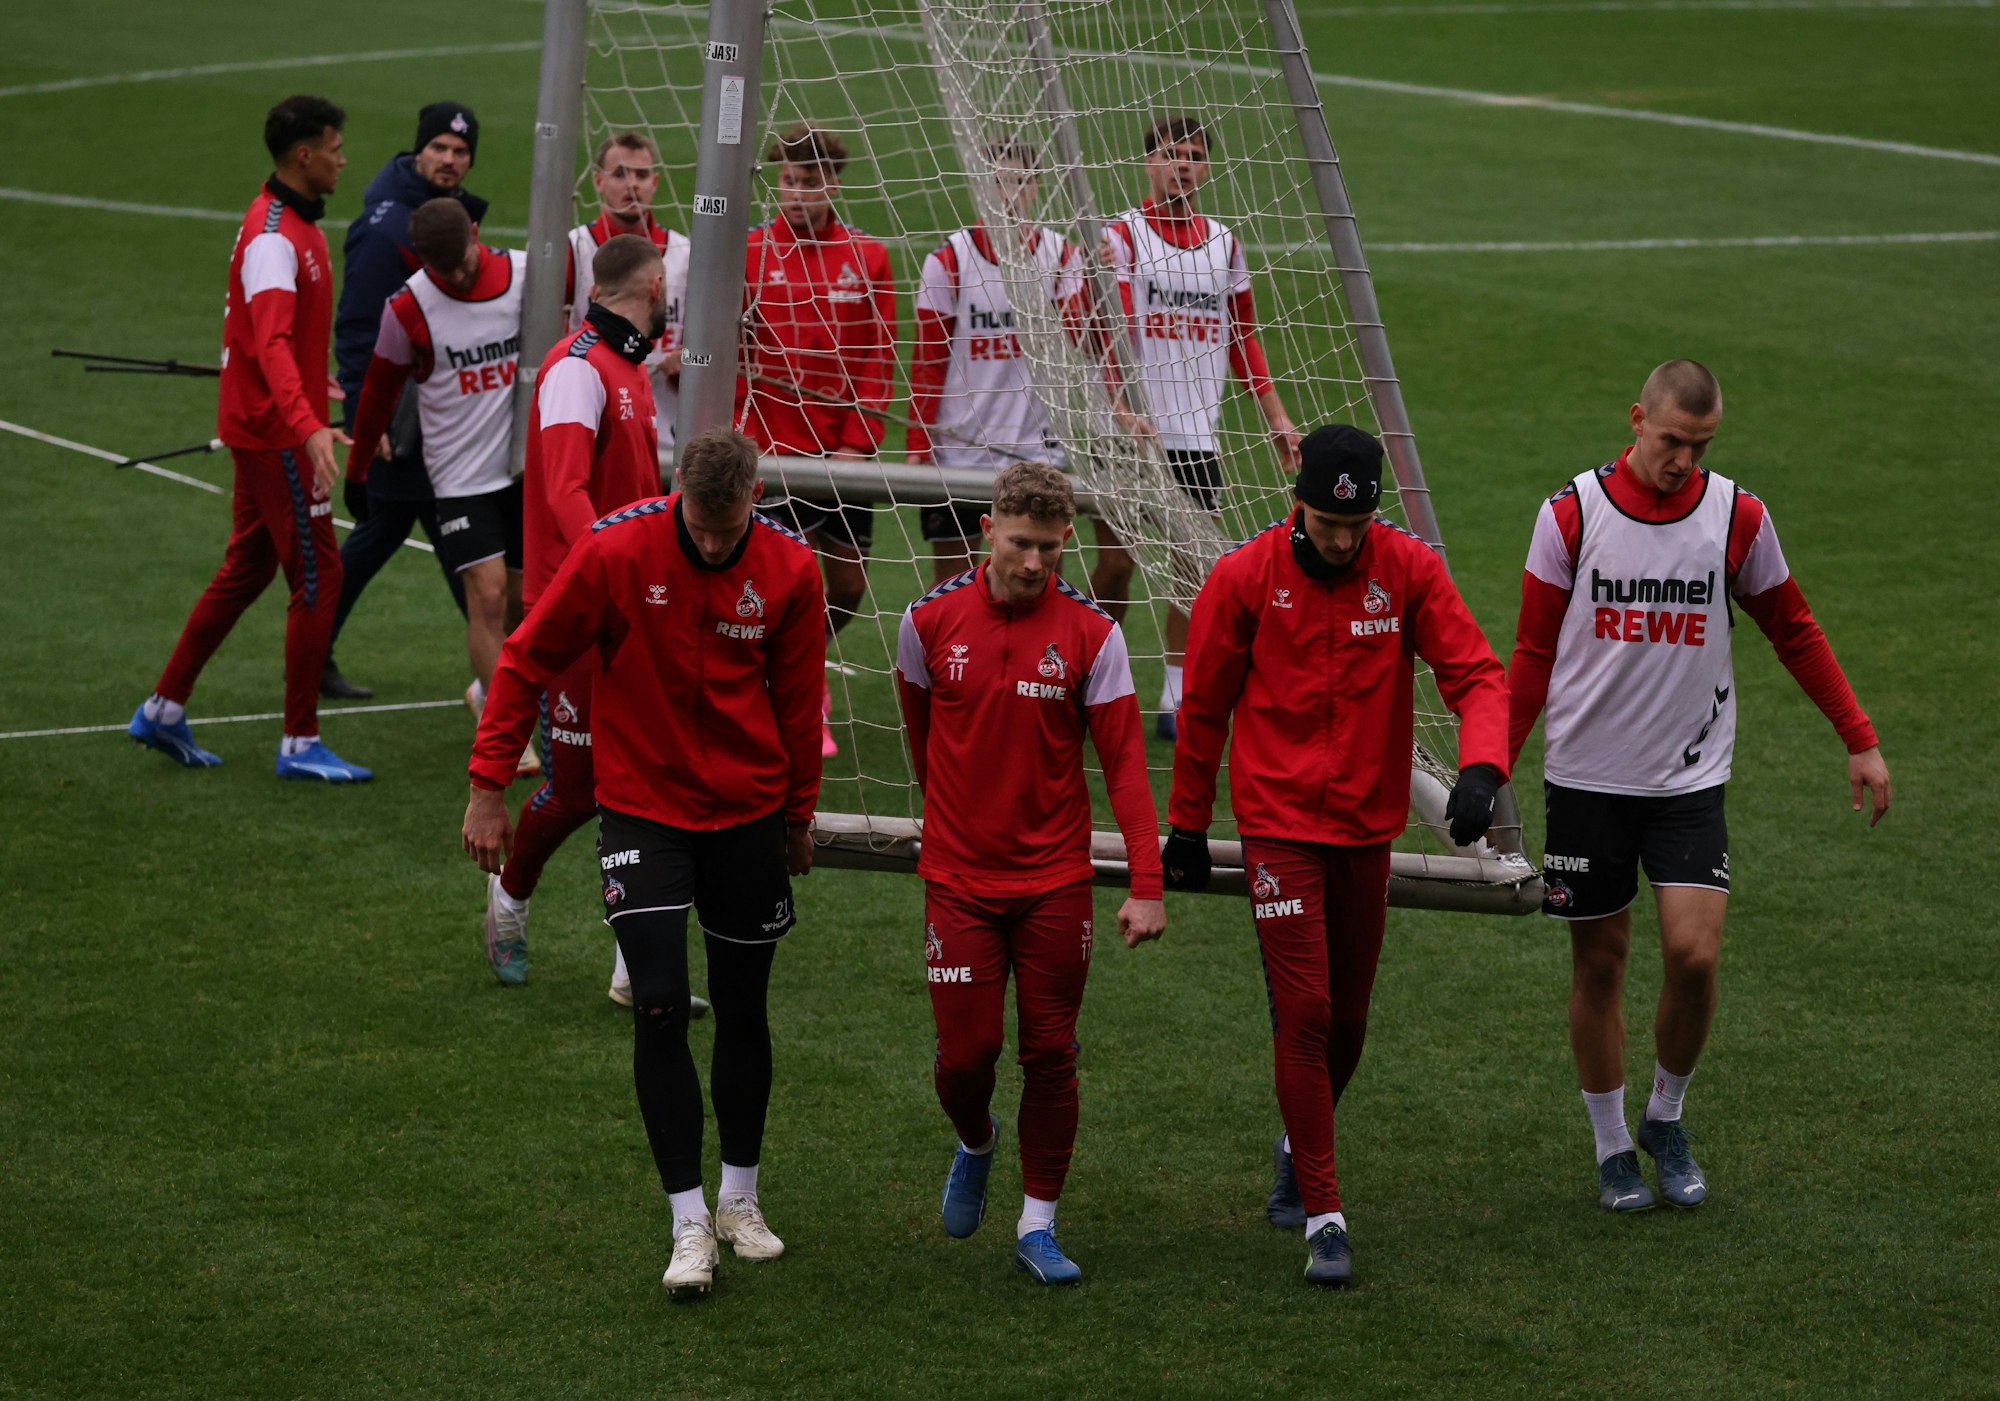 Training des 1. FC Köln im Franz-Kremer-Stadion am Geißbockheim in Köln: Die Spieler tragen ein Tor.